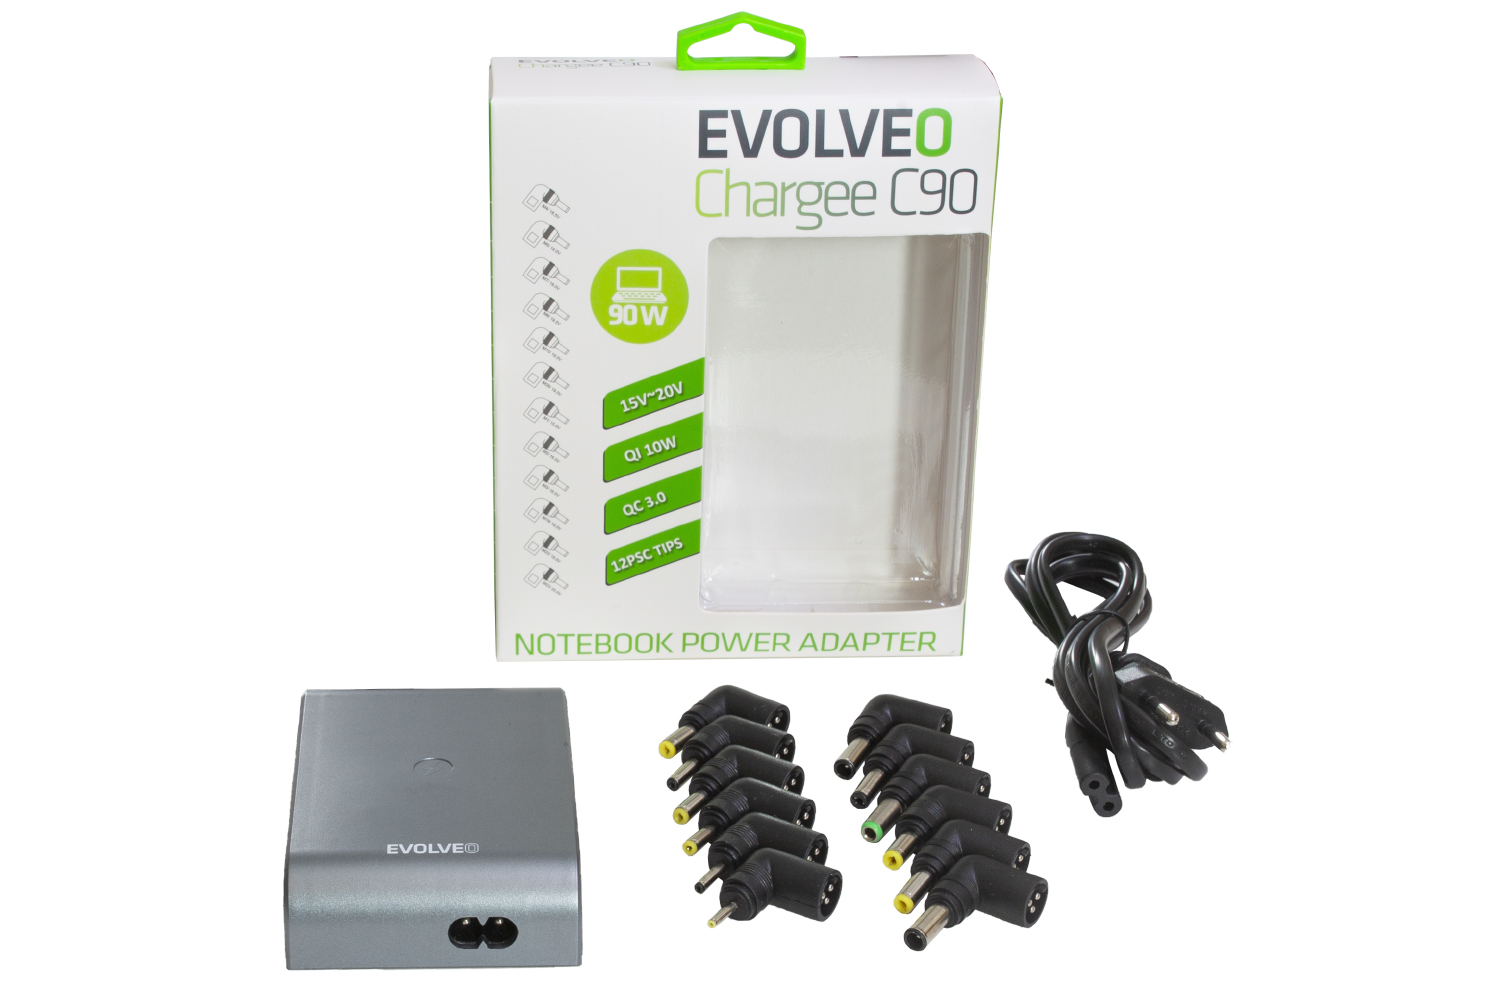 Univerzální napájecí zdroj pro notebooky Evolveo Chargee C90 s beztrátovým nabíjením, 90W 